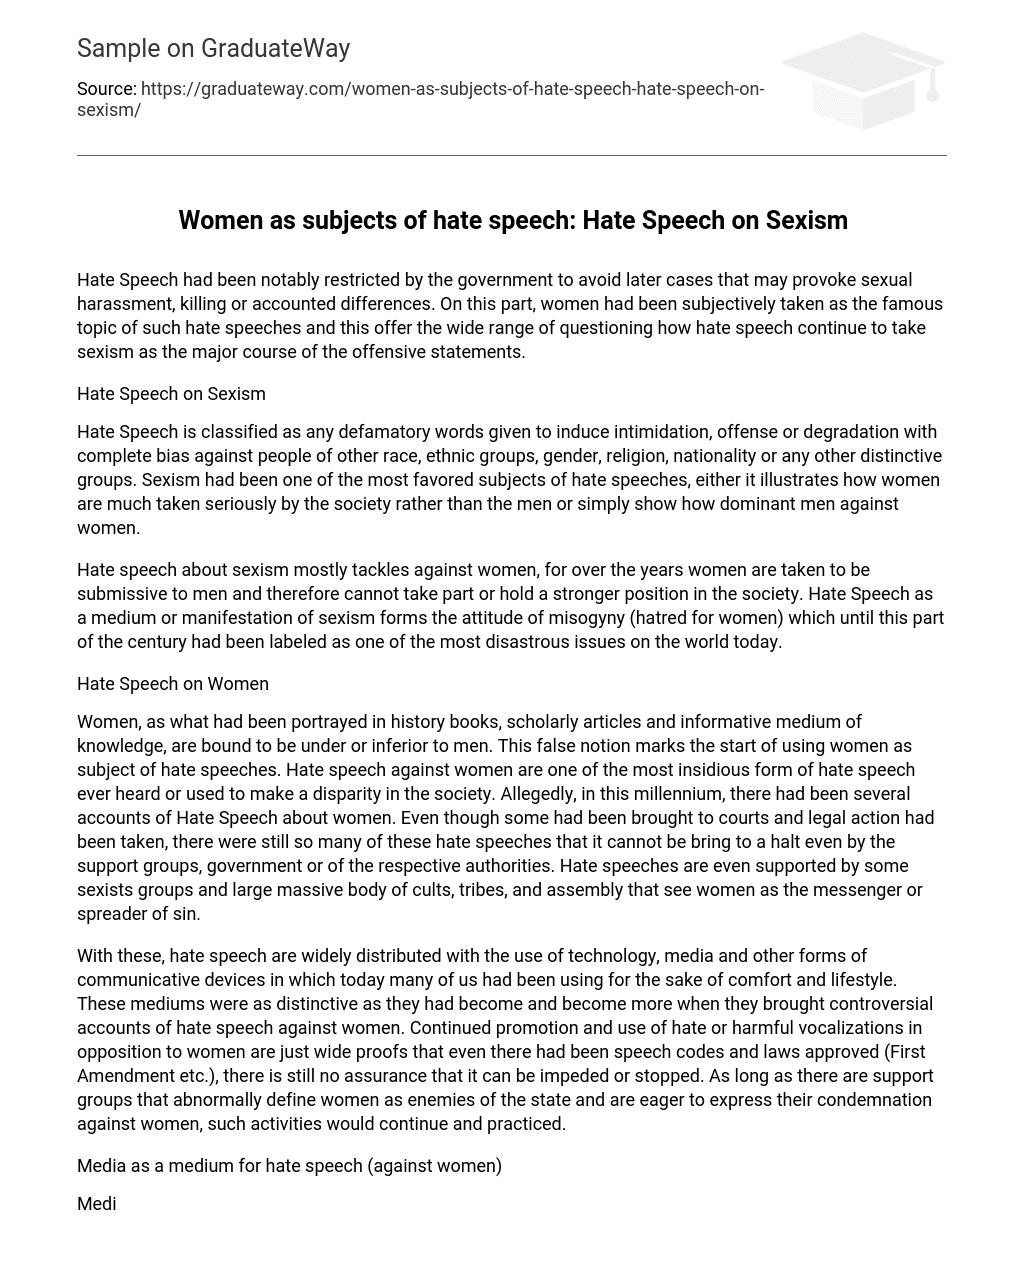 Women as subjects of hate speech: Hate Speech on Sexism